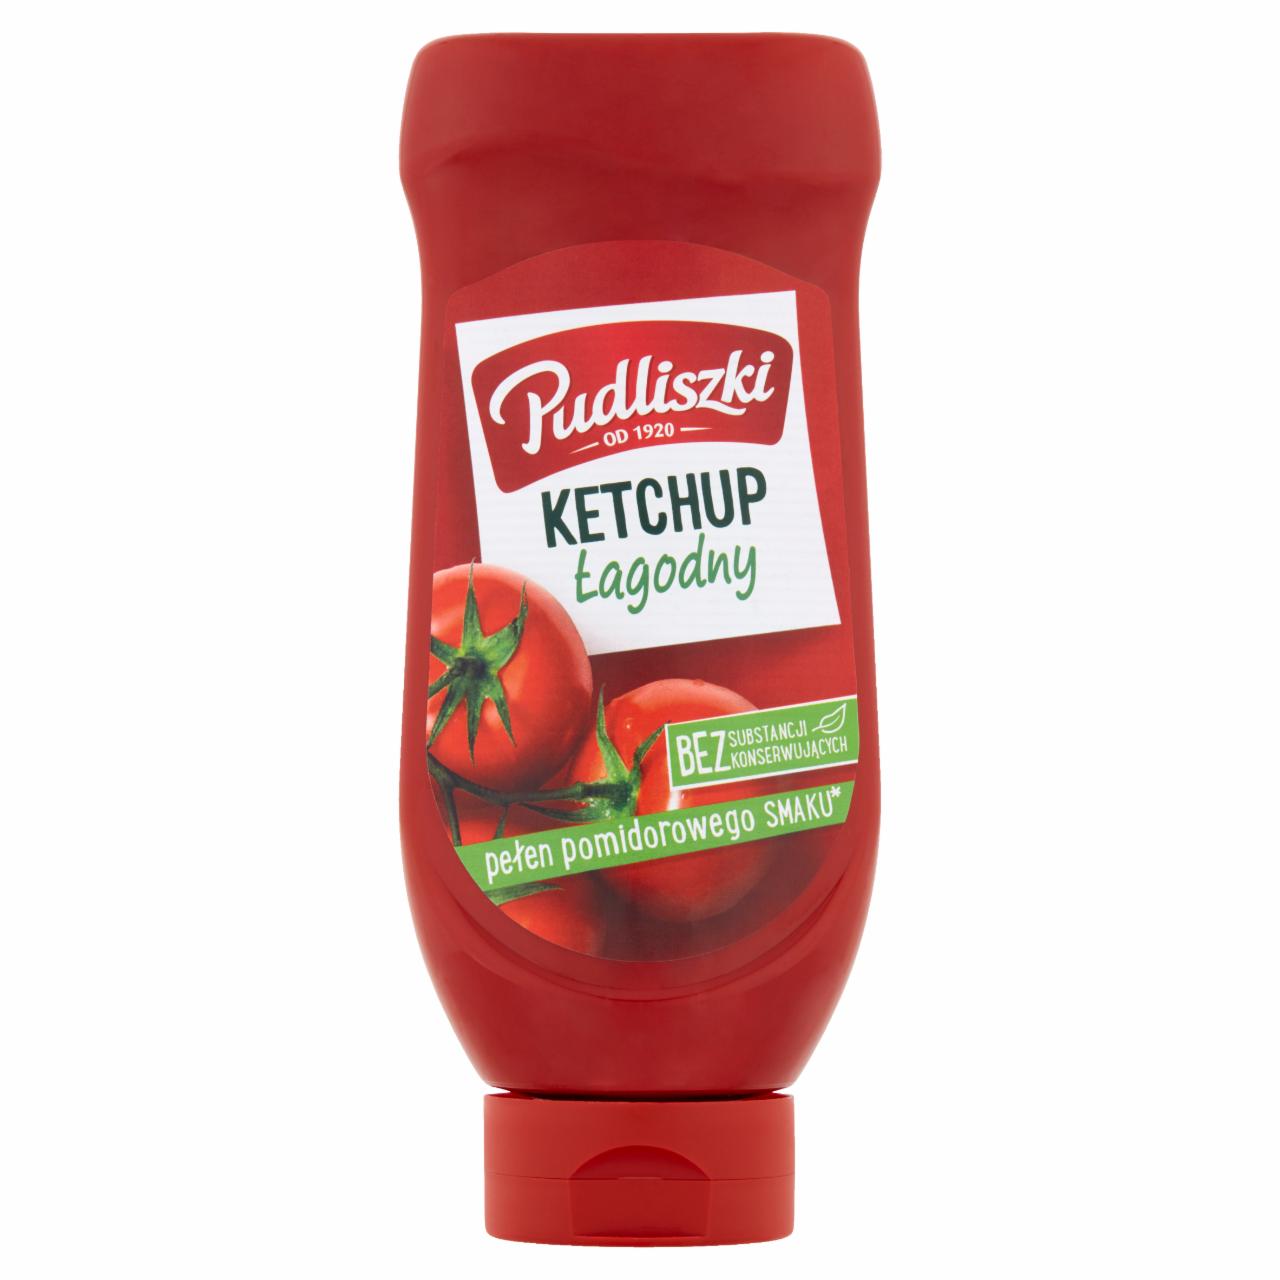 Zdjęcia - Pudliszki Ketchup łagodny 700 g